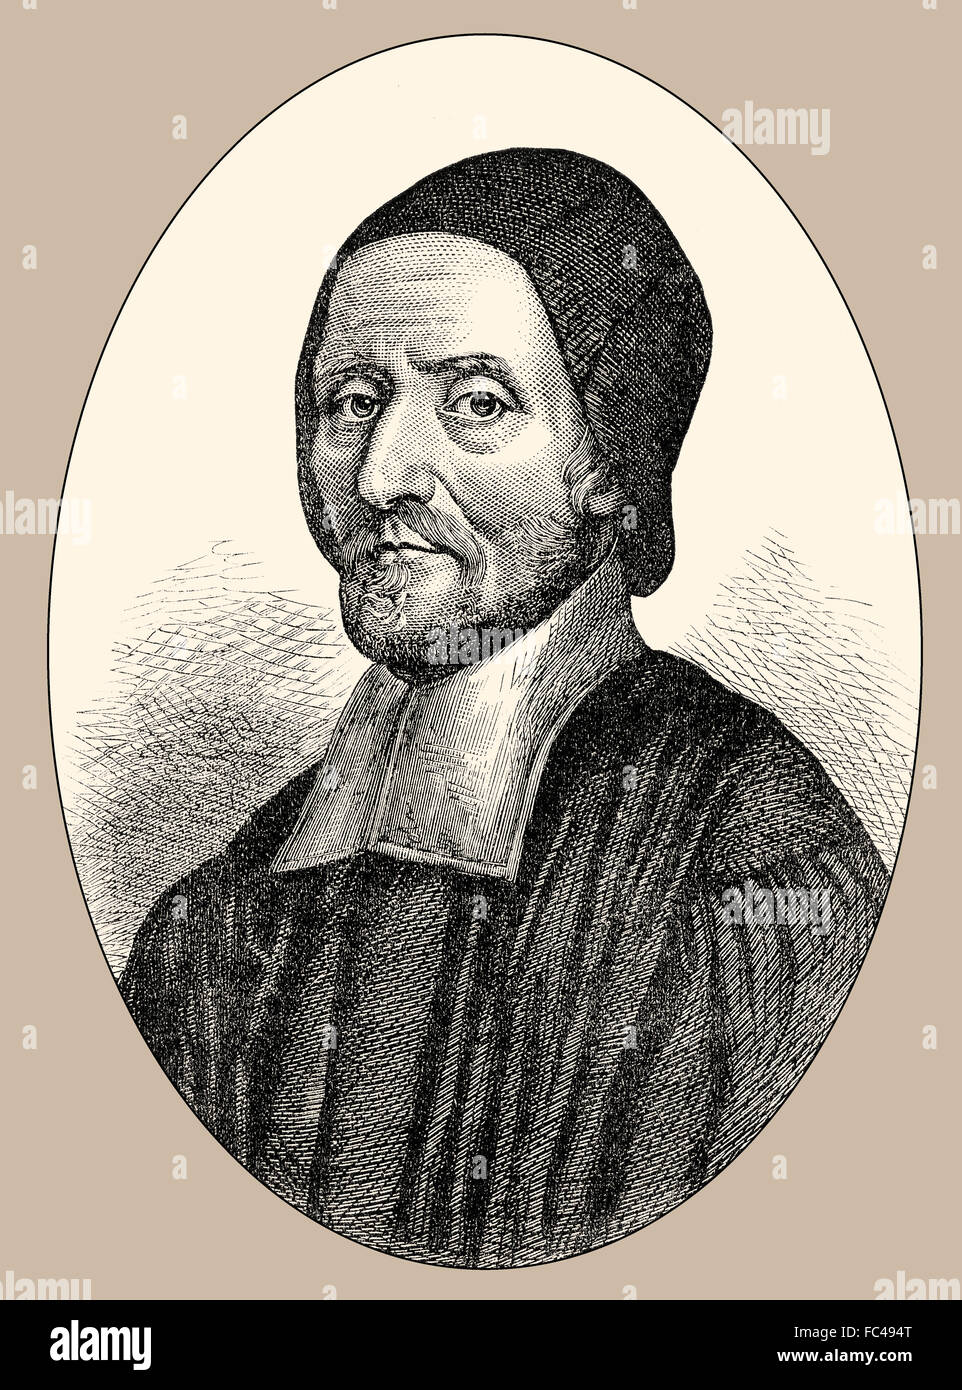 Le révérend Richard Busby, 1606-1695, un prêtre anglican qui a servi comme directeur de l'école de Westminster, Londres, Engla Banque D'Images